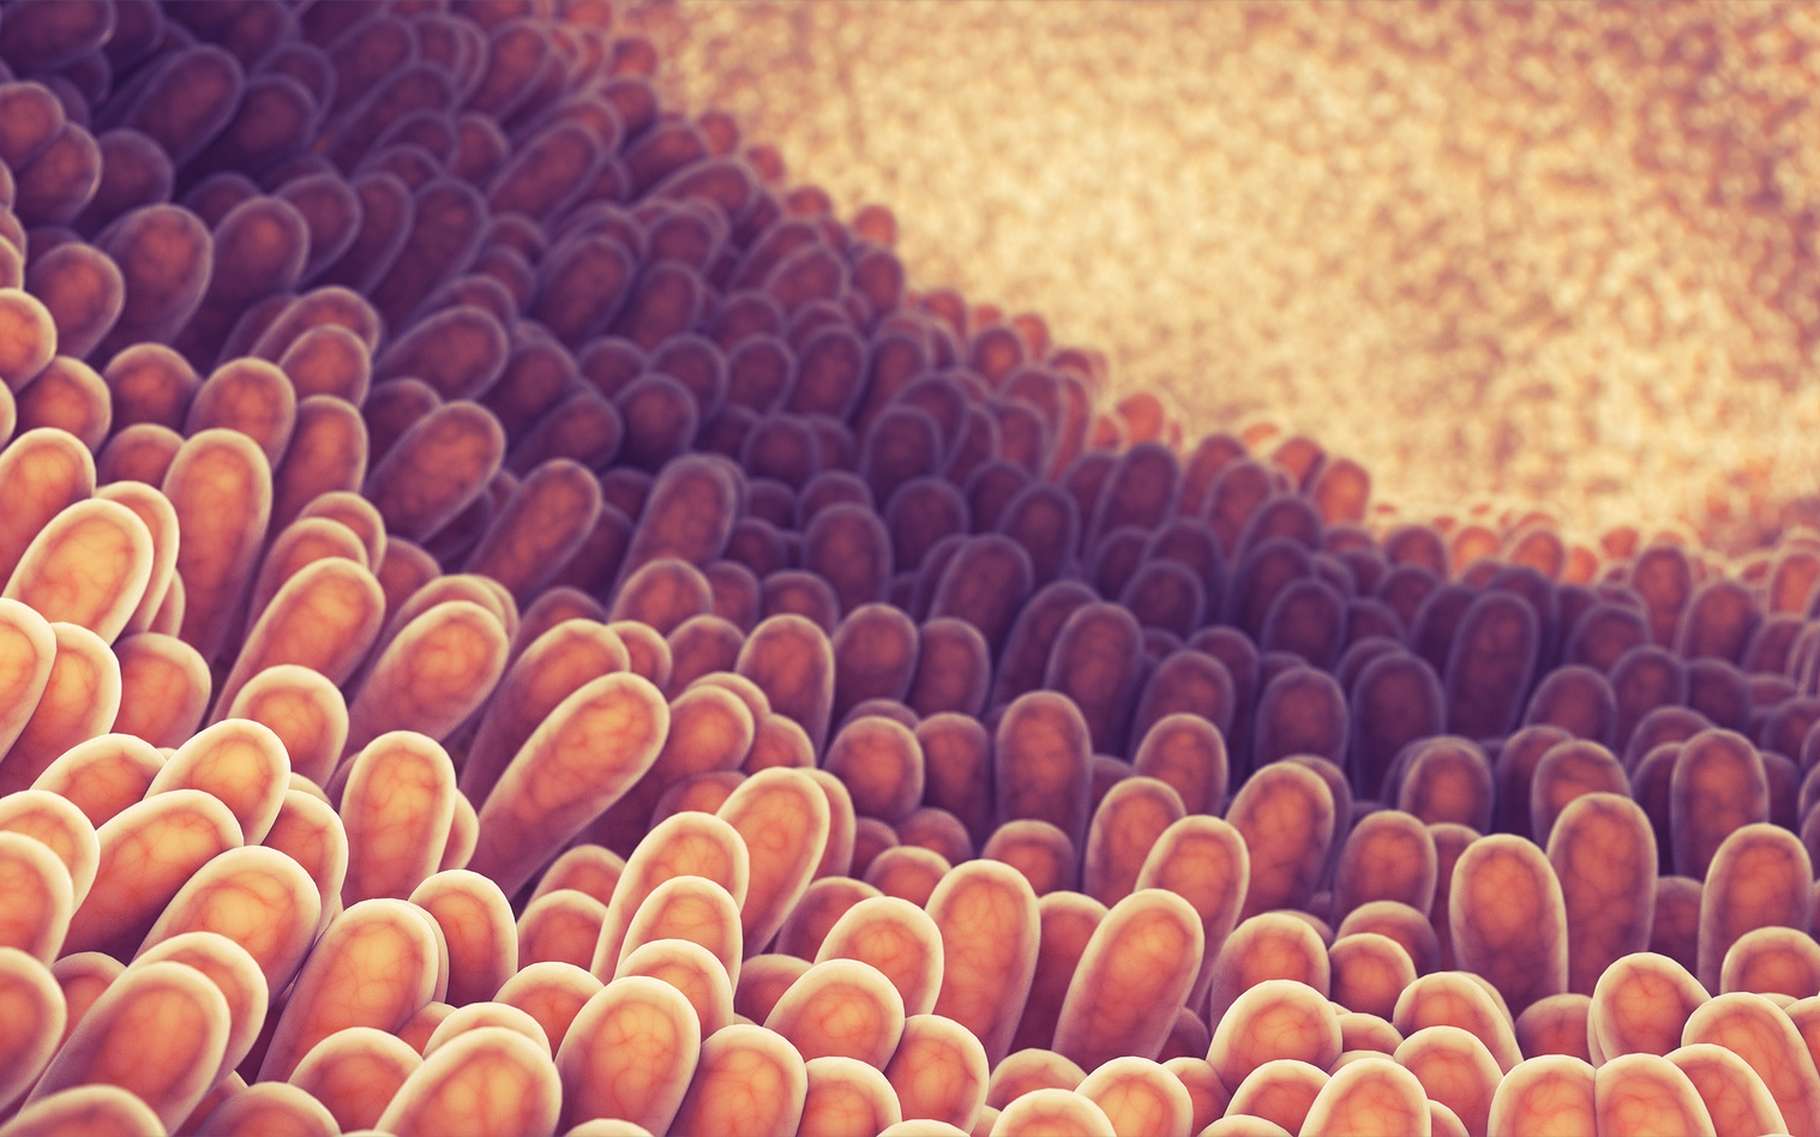 Lorsque la production de mucus est altérée au sein du côlon, cela se traduit par une plus grande inflammation. © nobeatssofierce, Shutterstock